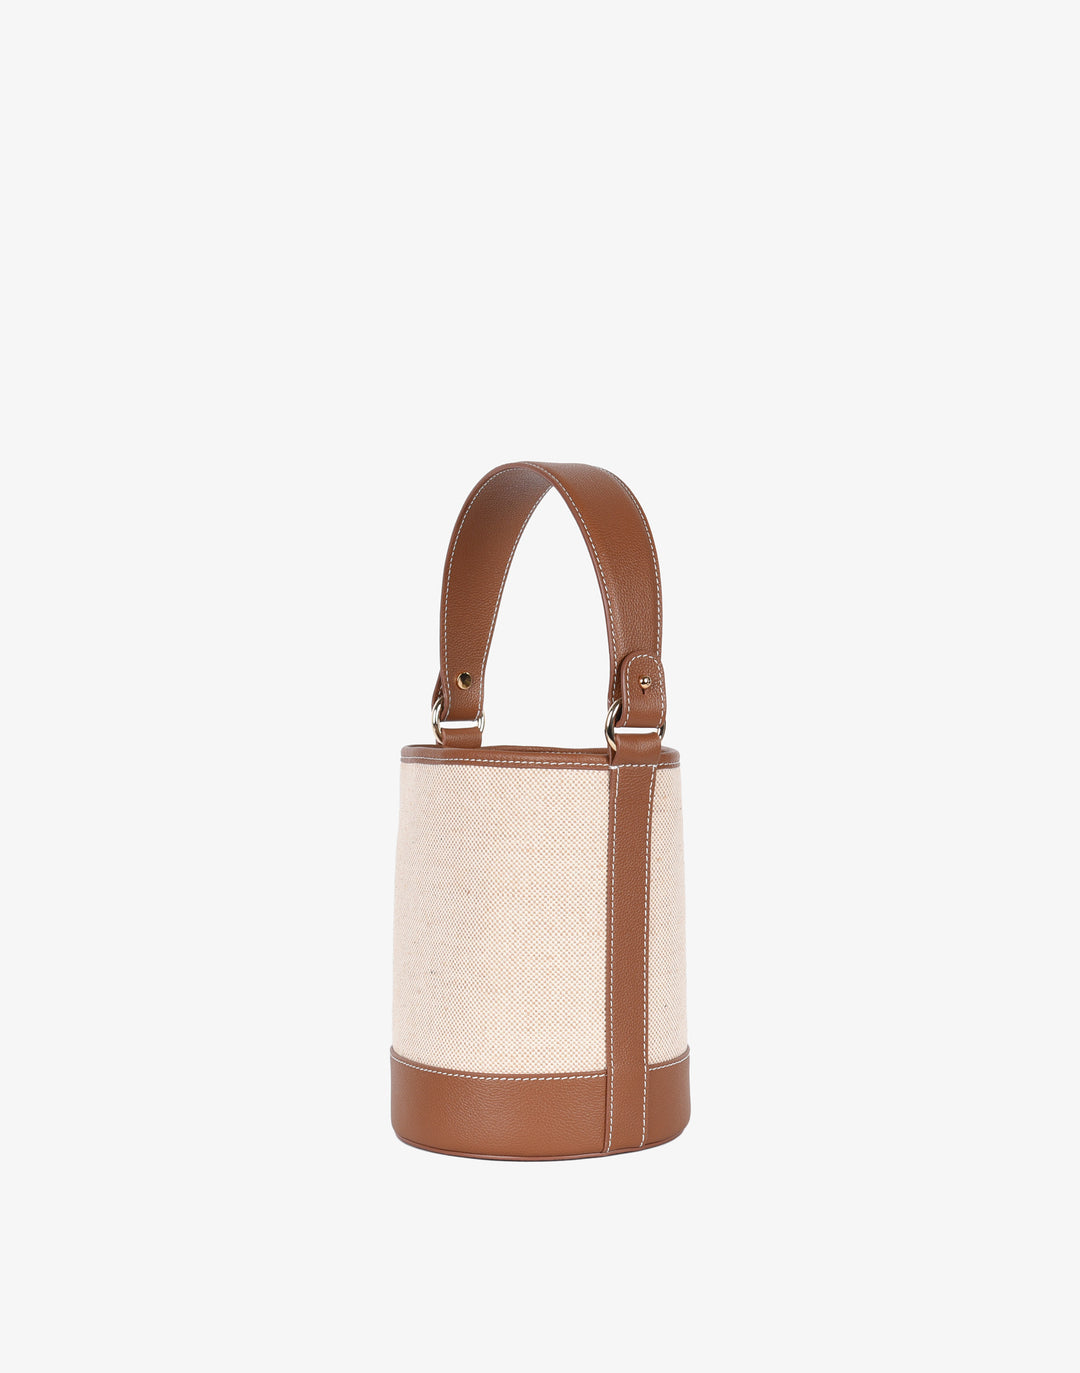 hyer goods cotton canvas mini bucket bag natural tan#color_linen